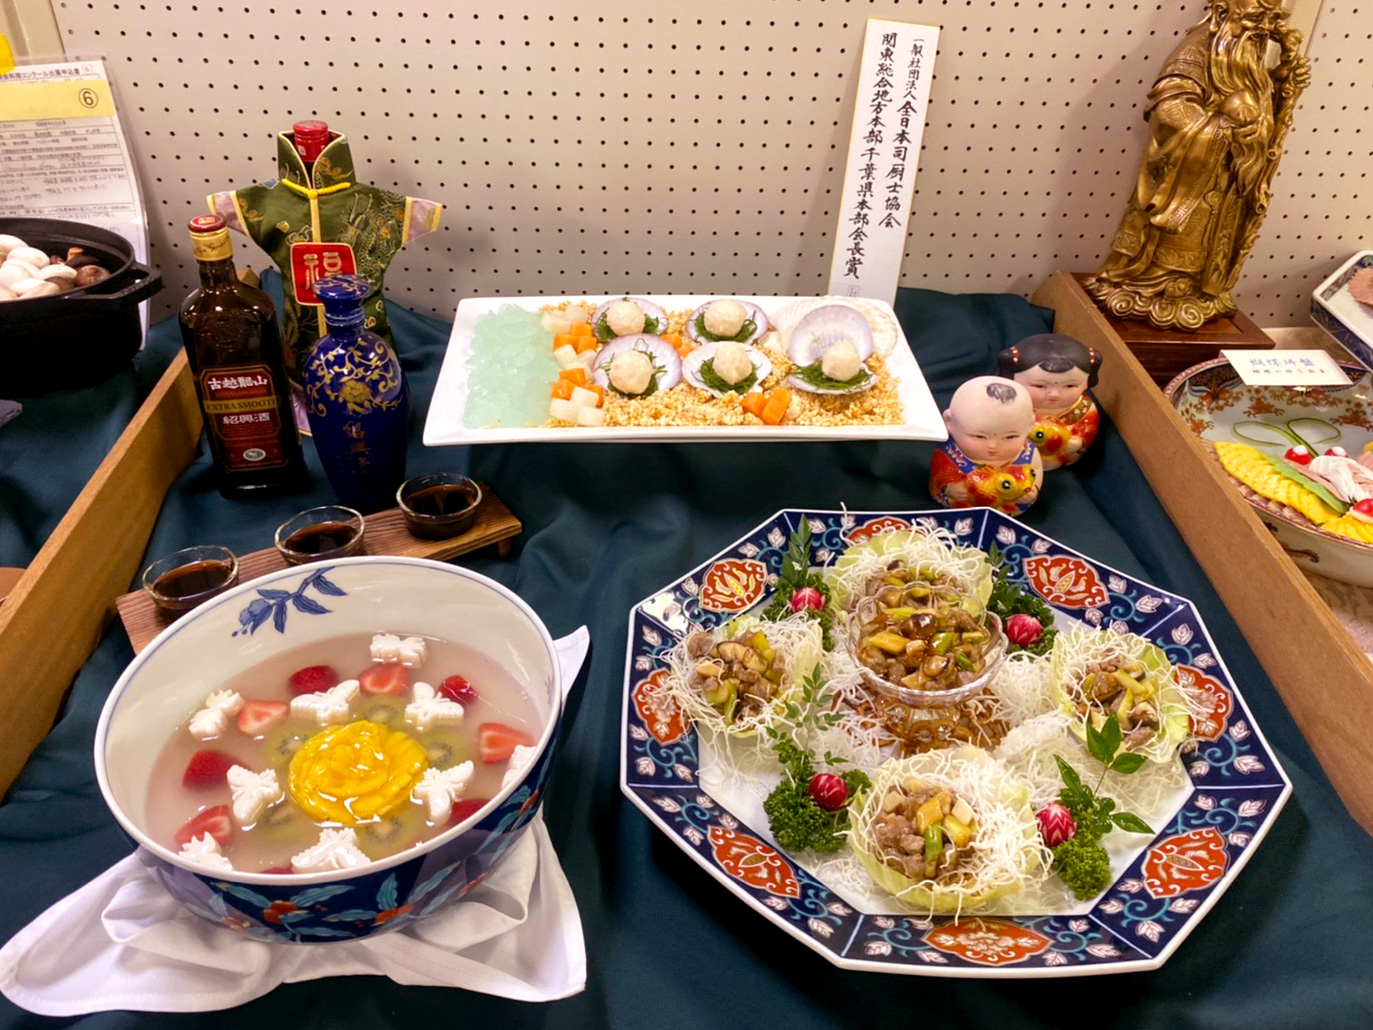 第32回千葉県調理師会の料理コンクールにて 第2位となる 千葉県健康福祉部長賞 を受賞しました ホテルからのお知らせ 京成ホテルミラマーレ